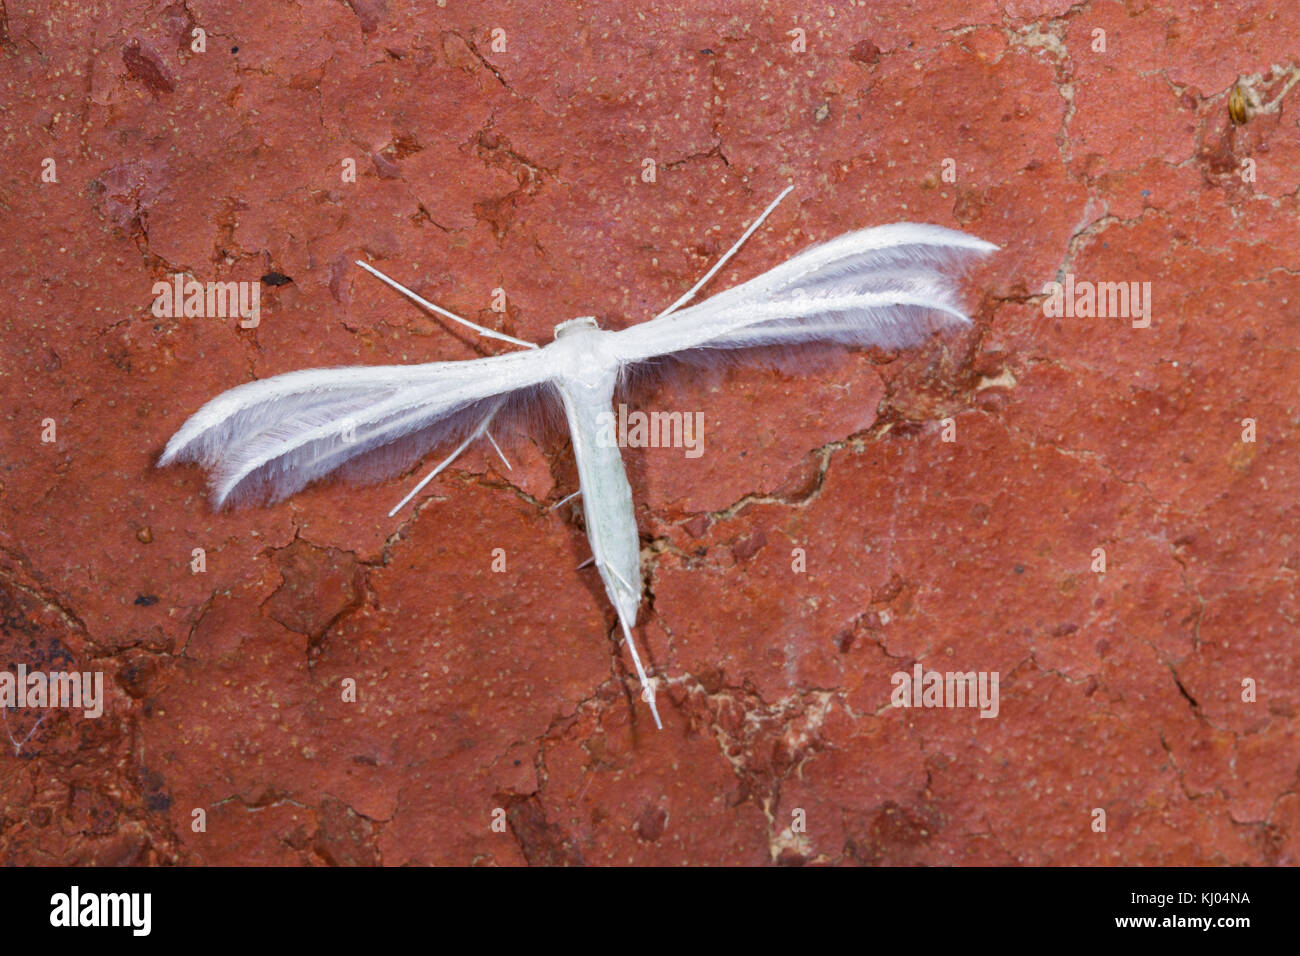 Plumet blanc Pterophorus pentadactyla) (repos adultes sur la brique. Powys, Pays de Galles. Juillet. Banque D'Images